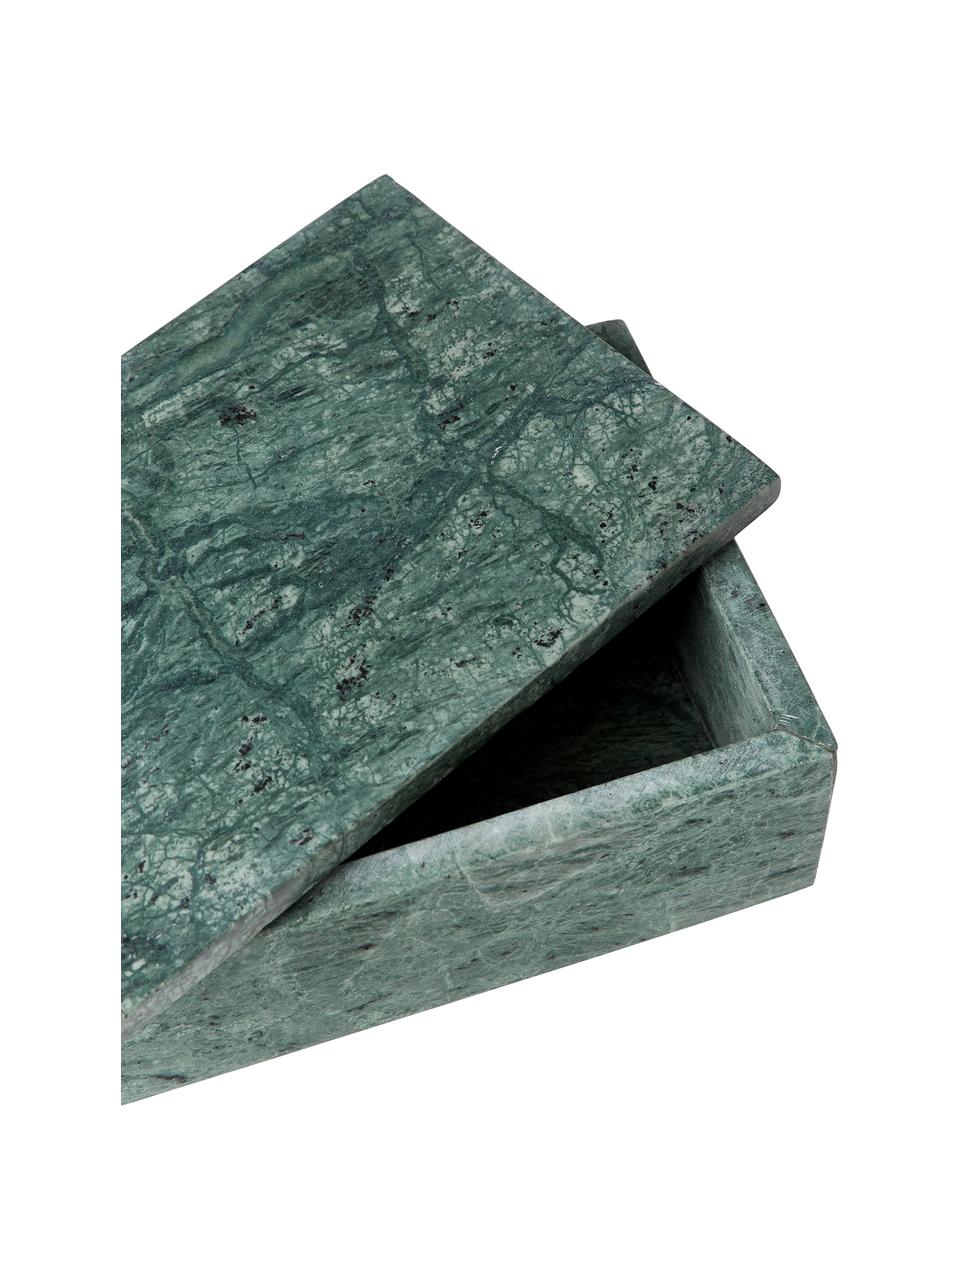 Mramorová šperkovnice Venice, Mramor, Zelená, mramorovaná, Š 20 cm, V 7 cm